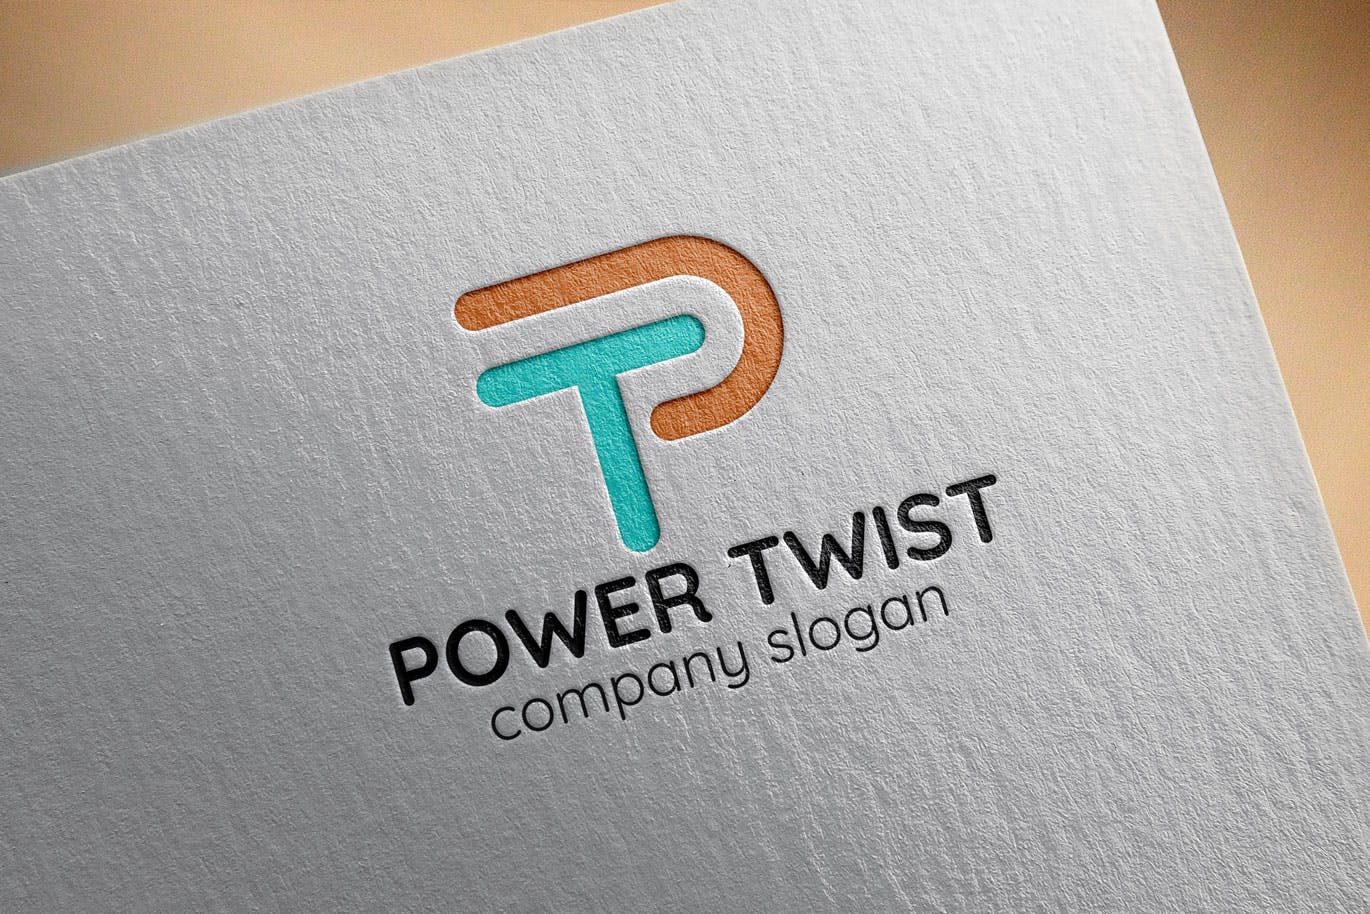 P字母图形创意Logo设计第一素材精选模板 Power Twist Creative Logo Template插图(2)